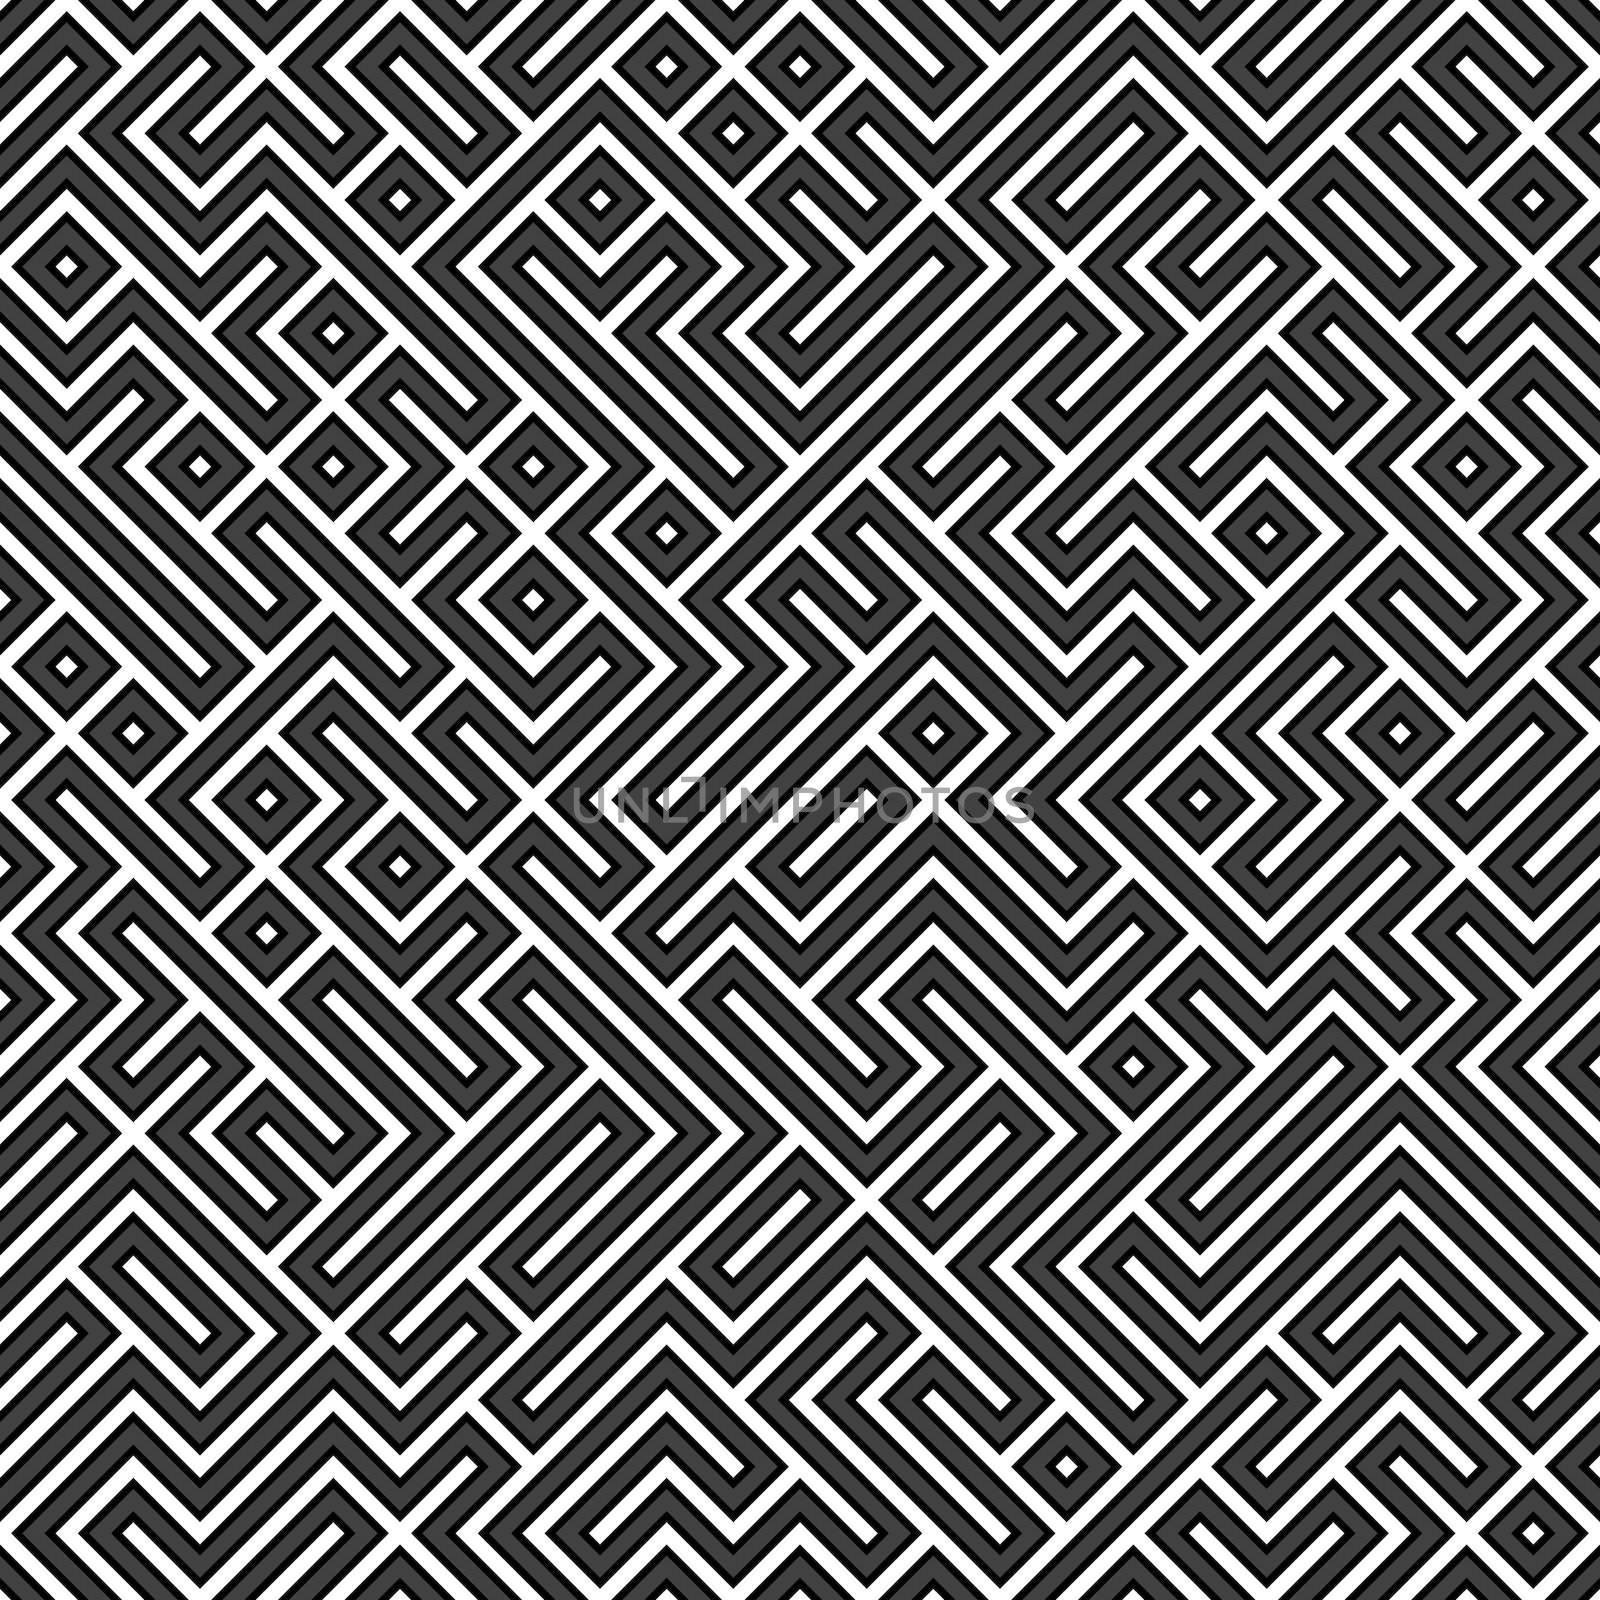 Geometric Maze by graficallyminded